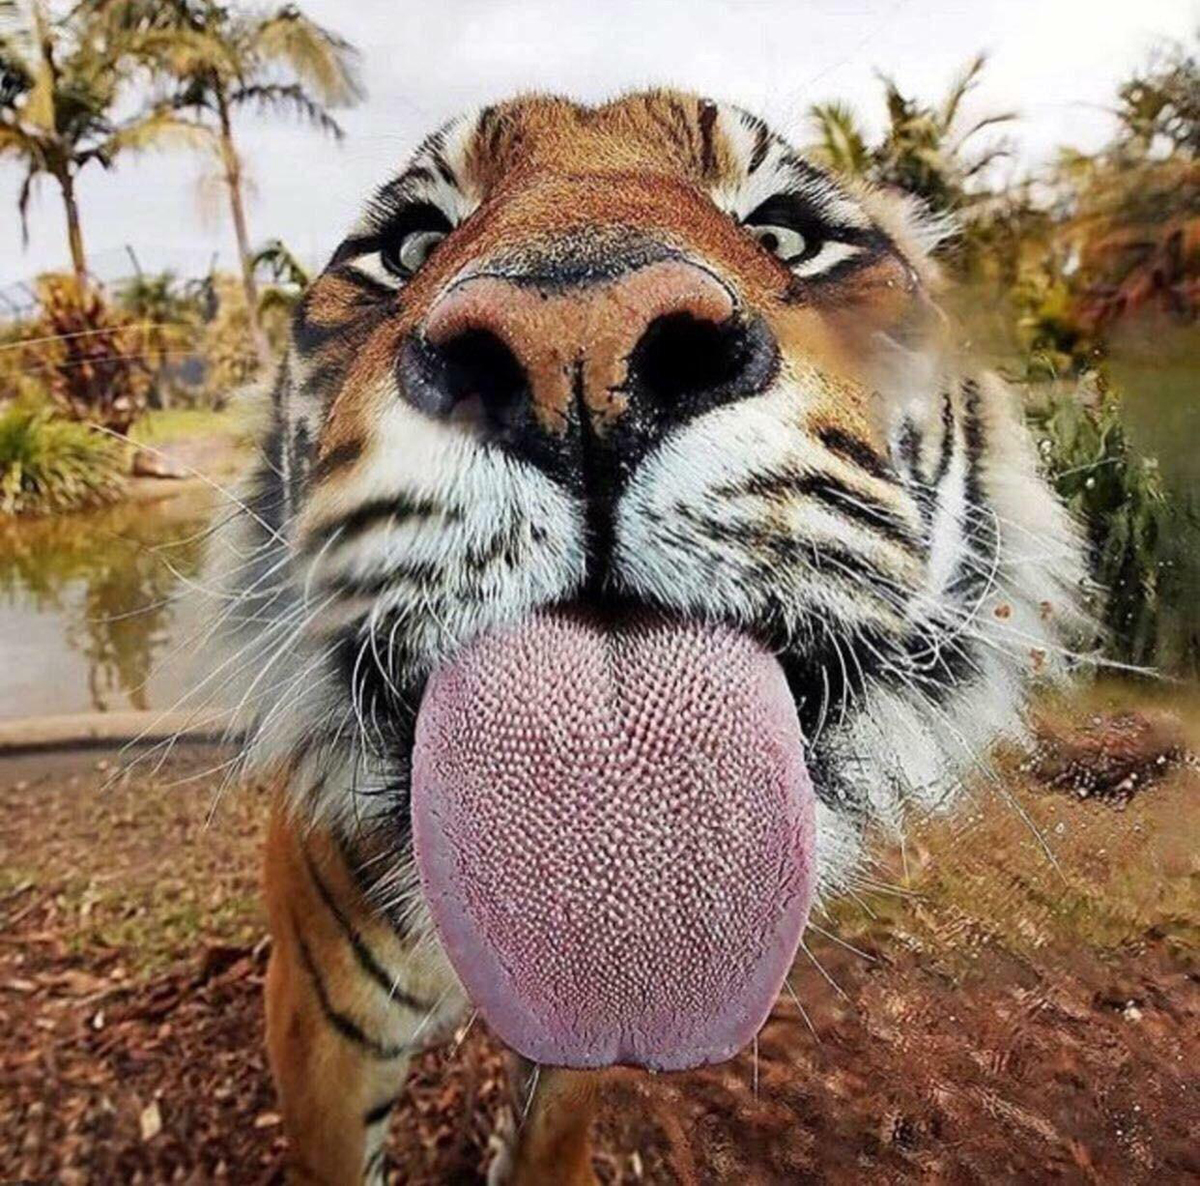 除了爪子和牙齿外,老虎的舌头也是一把刮骨刀,被舔一下后果严重